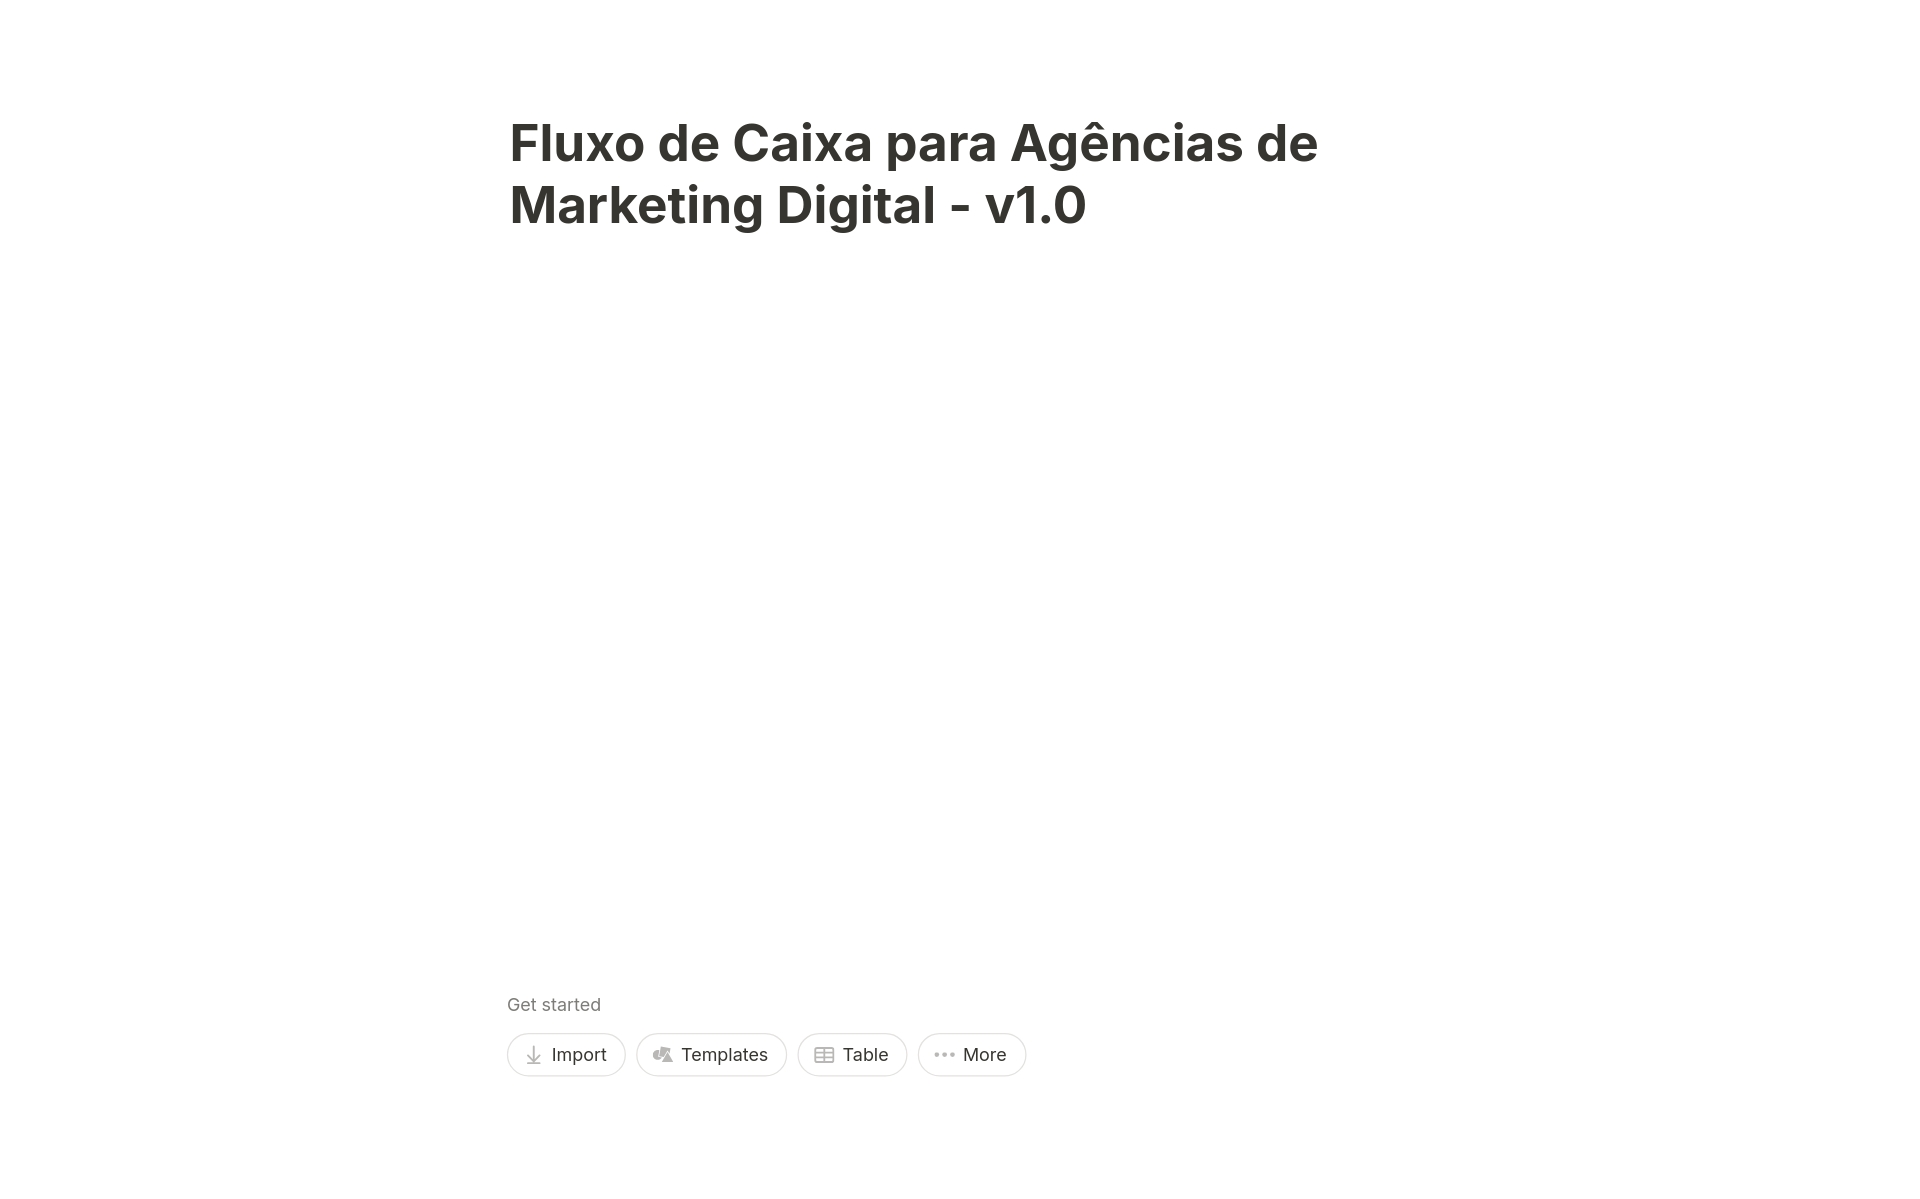 A template preview for Fluxo de Caixa para Agencias de Marketing Digital